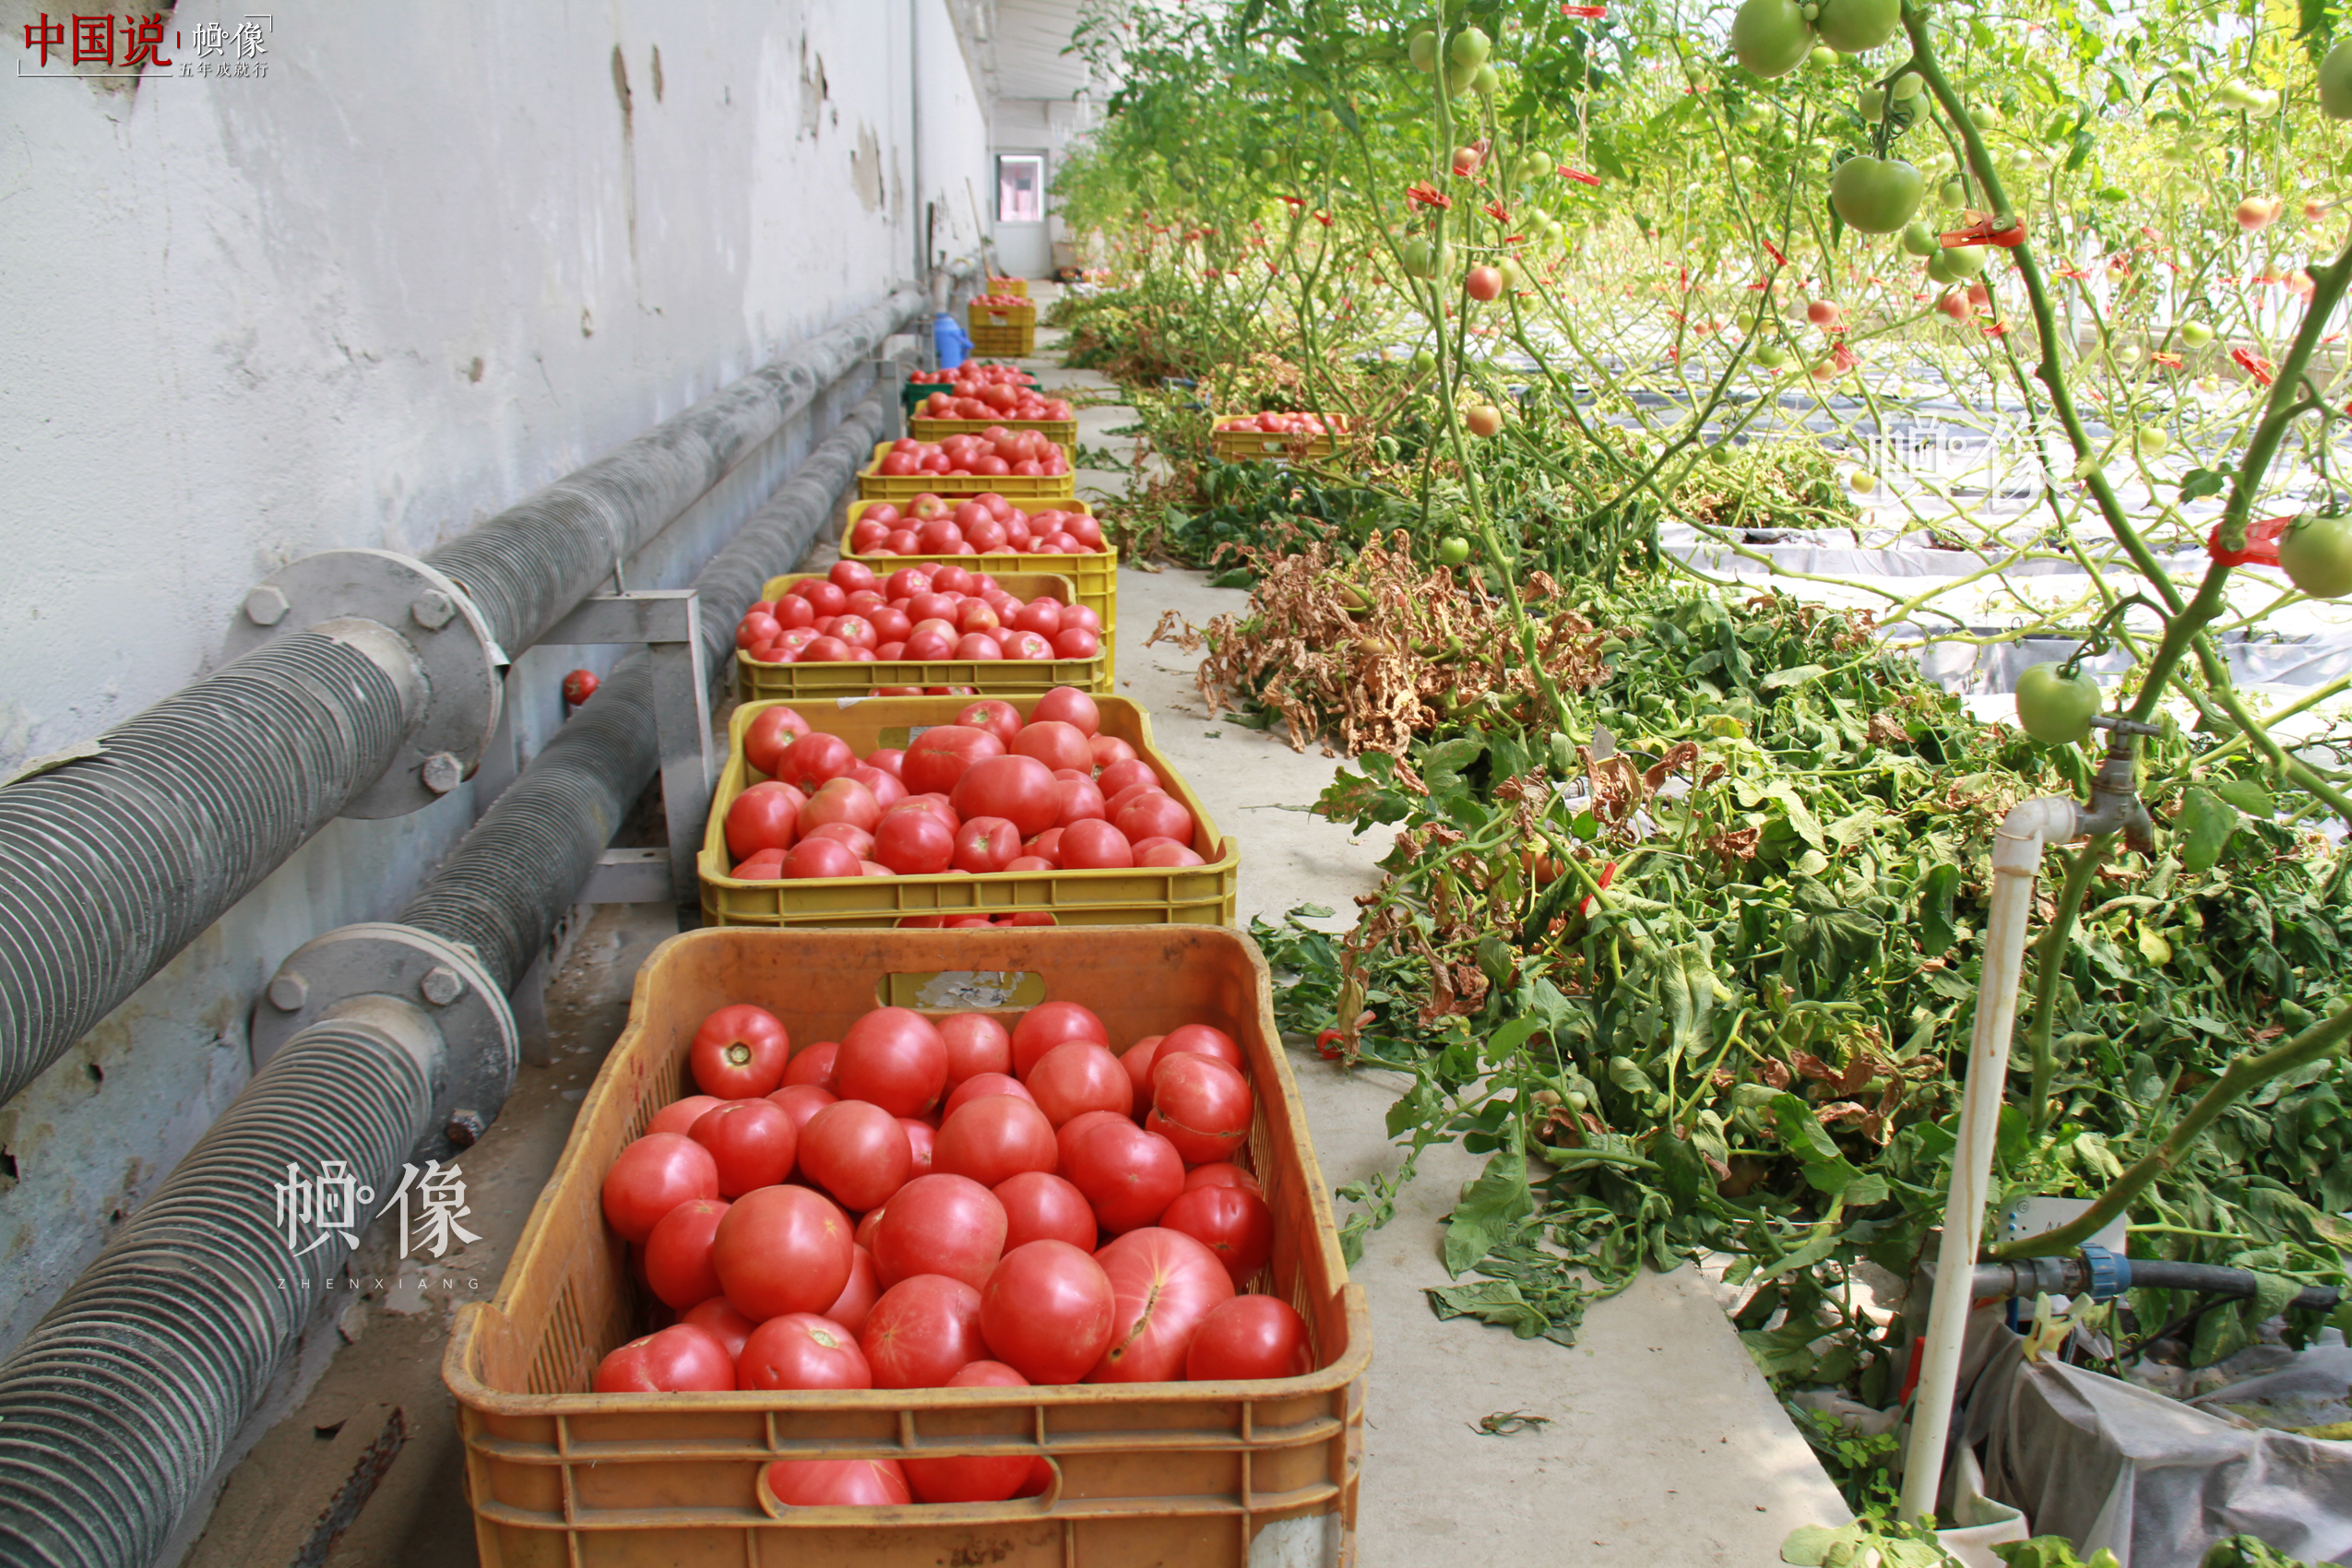 北京天安农业小汤山特菜基地刚摘下的数筐西红柿。中国网记者 赵超 摄